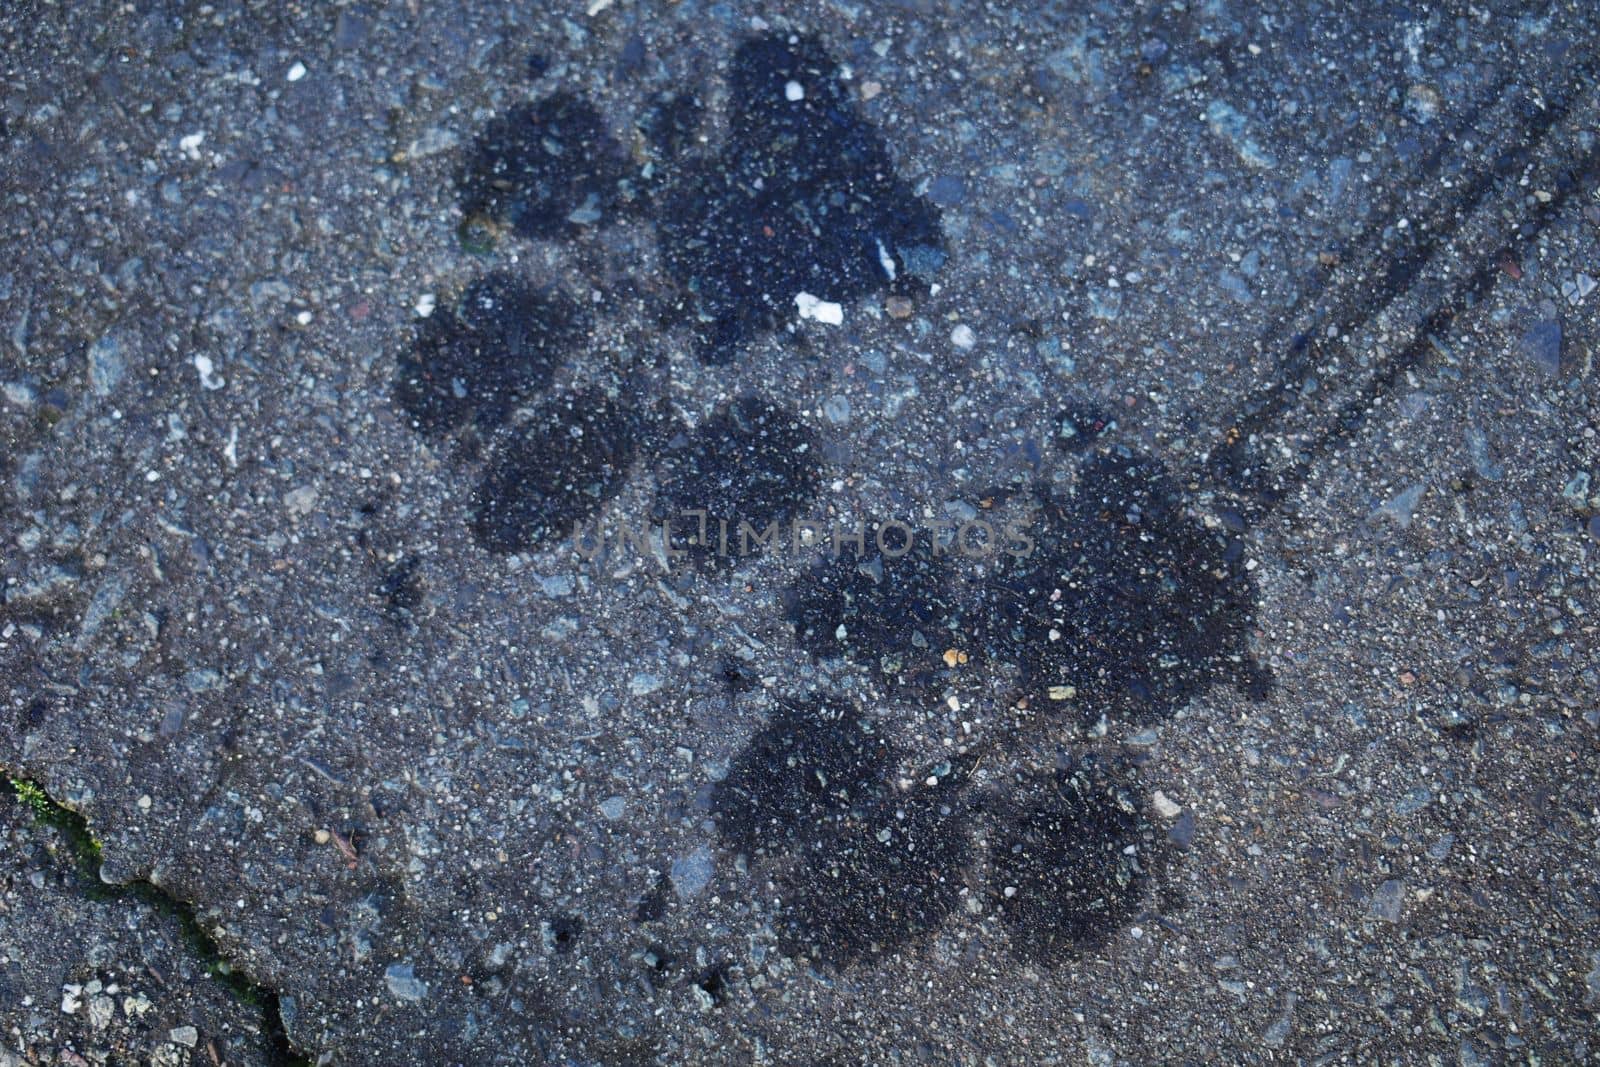 Dog footprints by WielandTeixeira